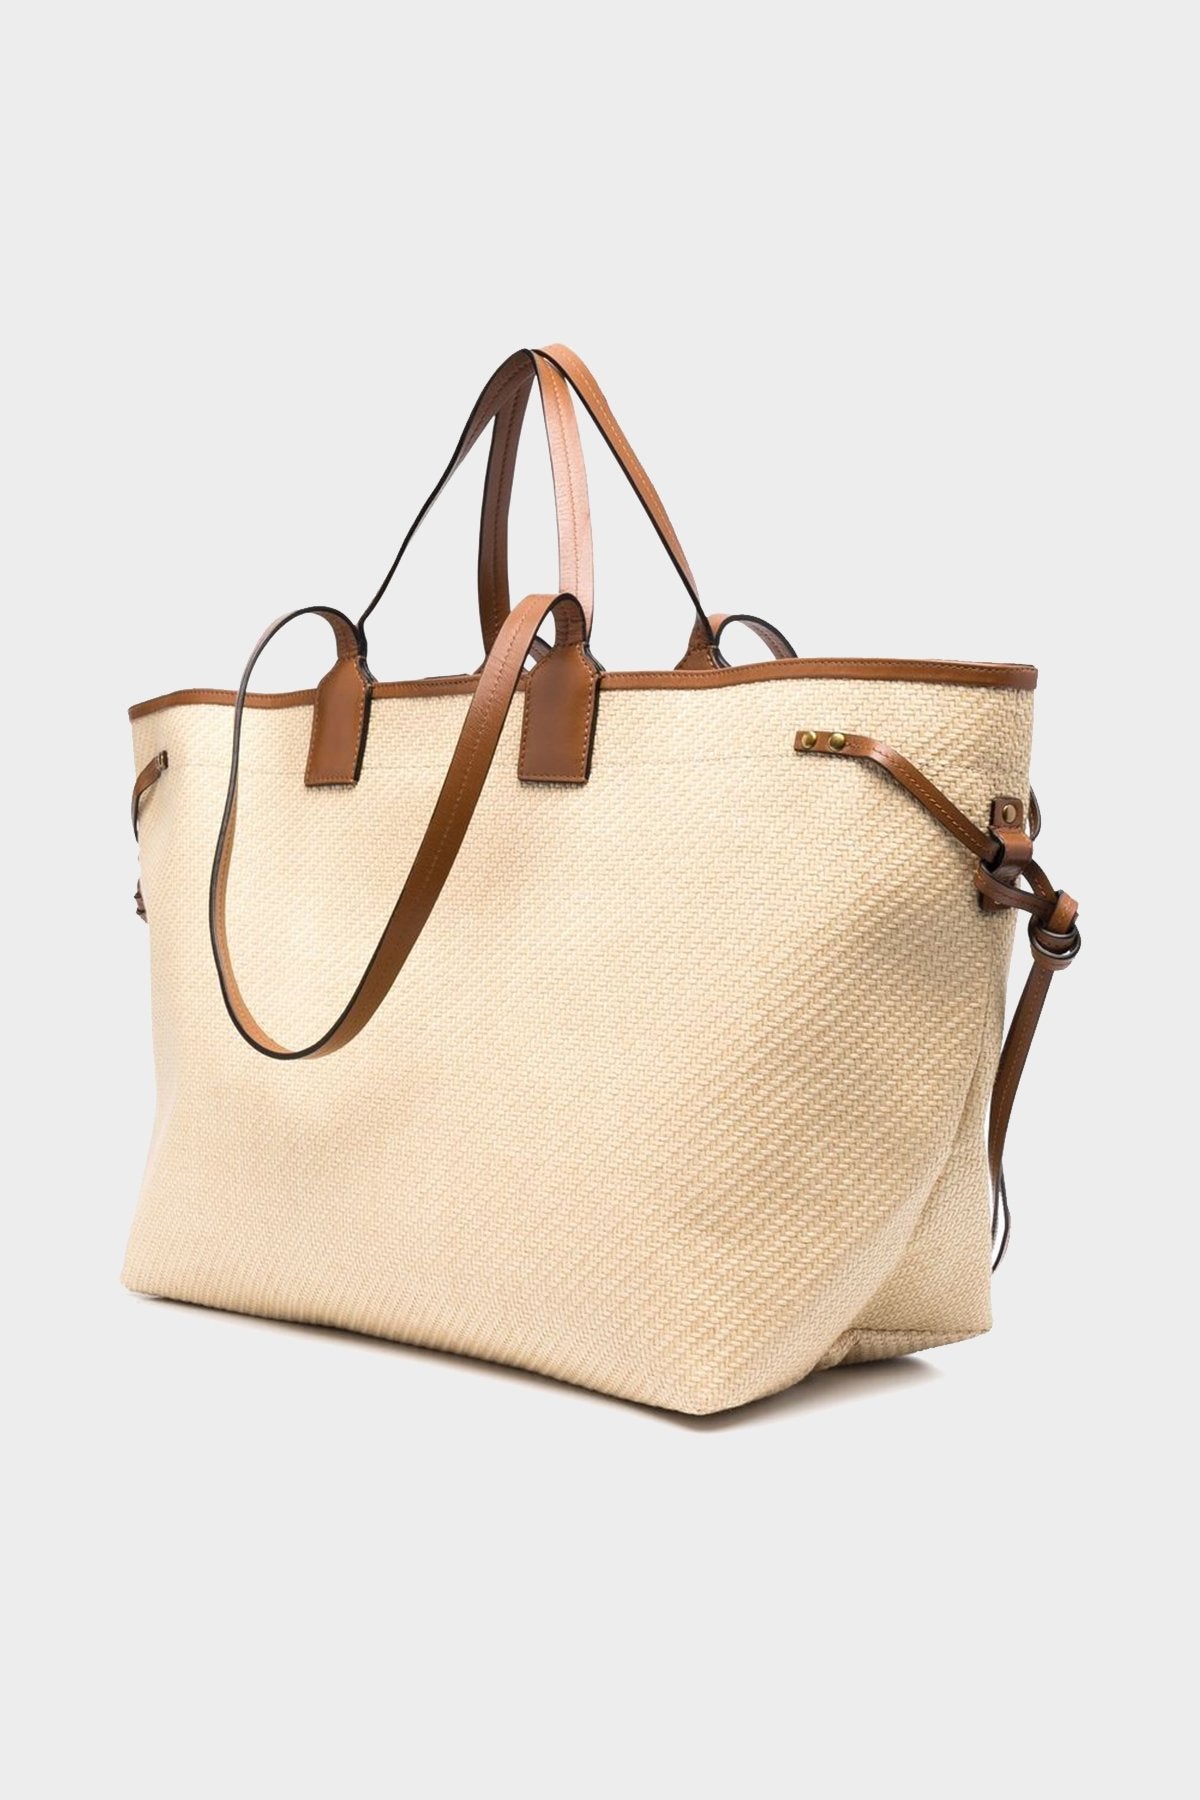 Wydra Shoulder Bag in Natural Cognac - shop-olivia.com